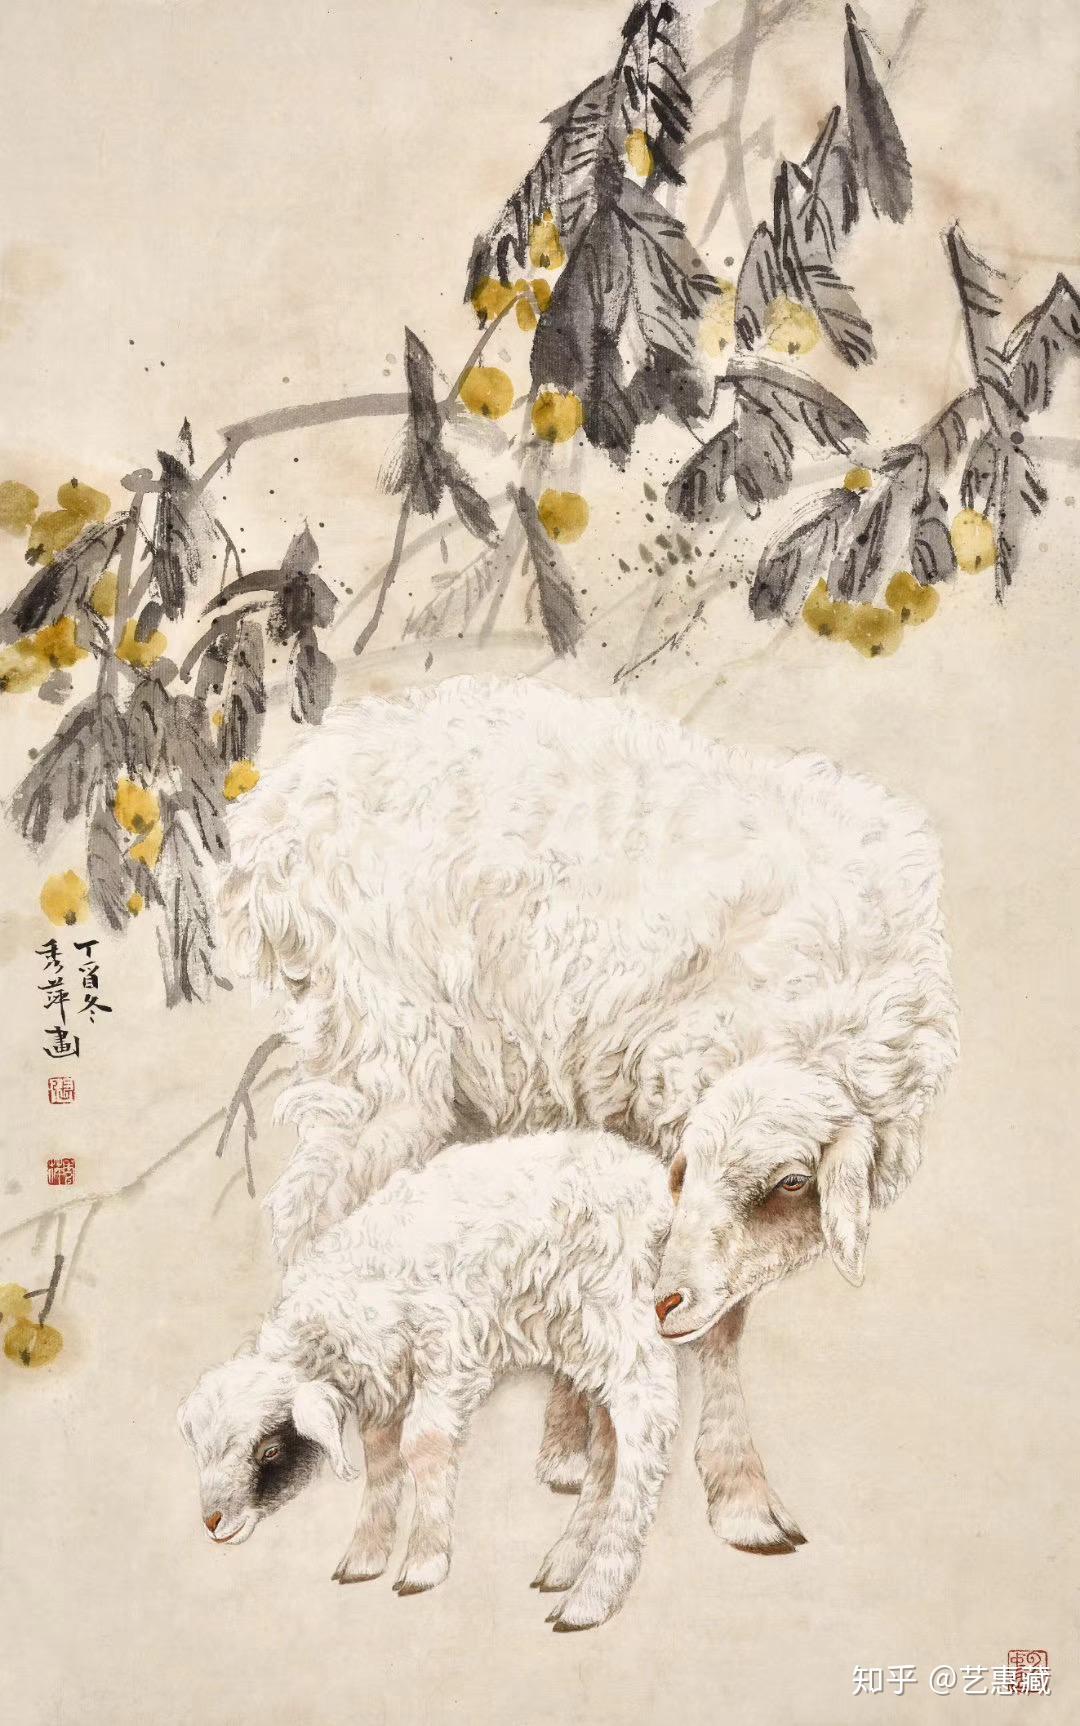 艺惠藏 艺惠藏书画艺术研究院 1人赞同了该文章 古人把羊与祥通用